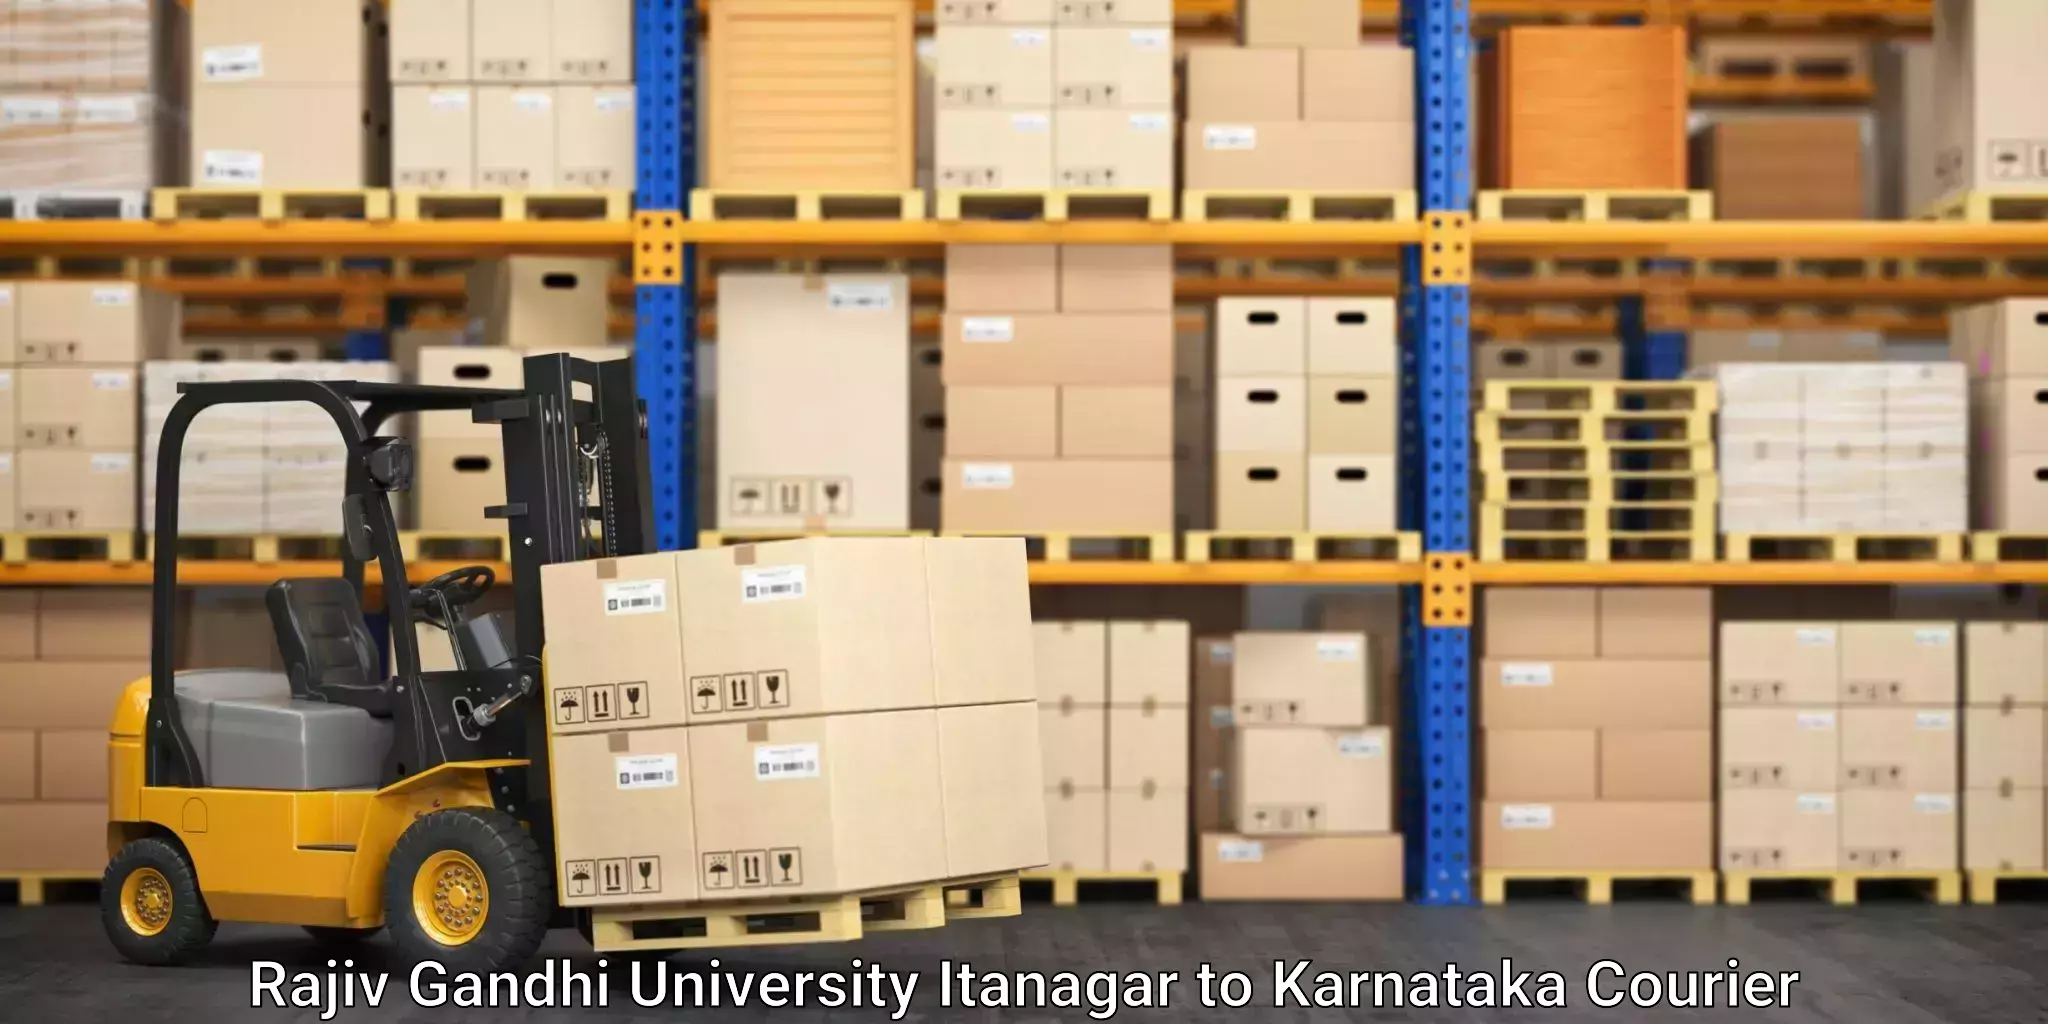 Tracking updates Rajiv Gandhi University Itanagar to Basavakalyan